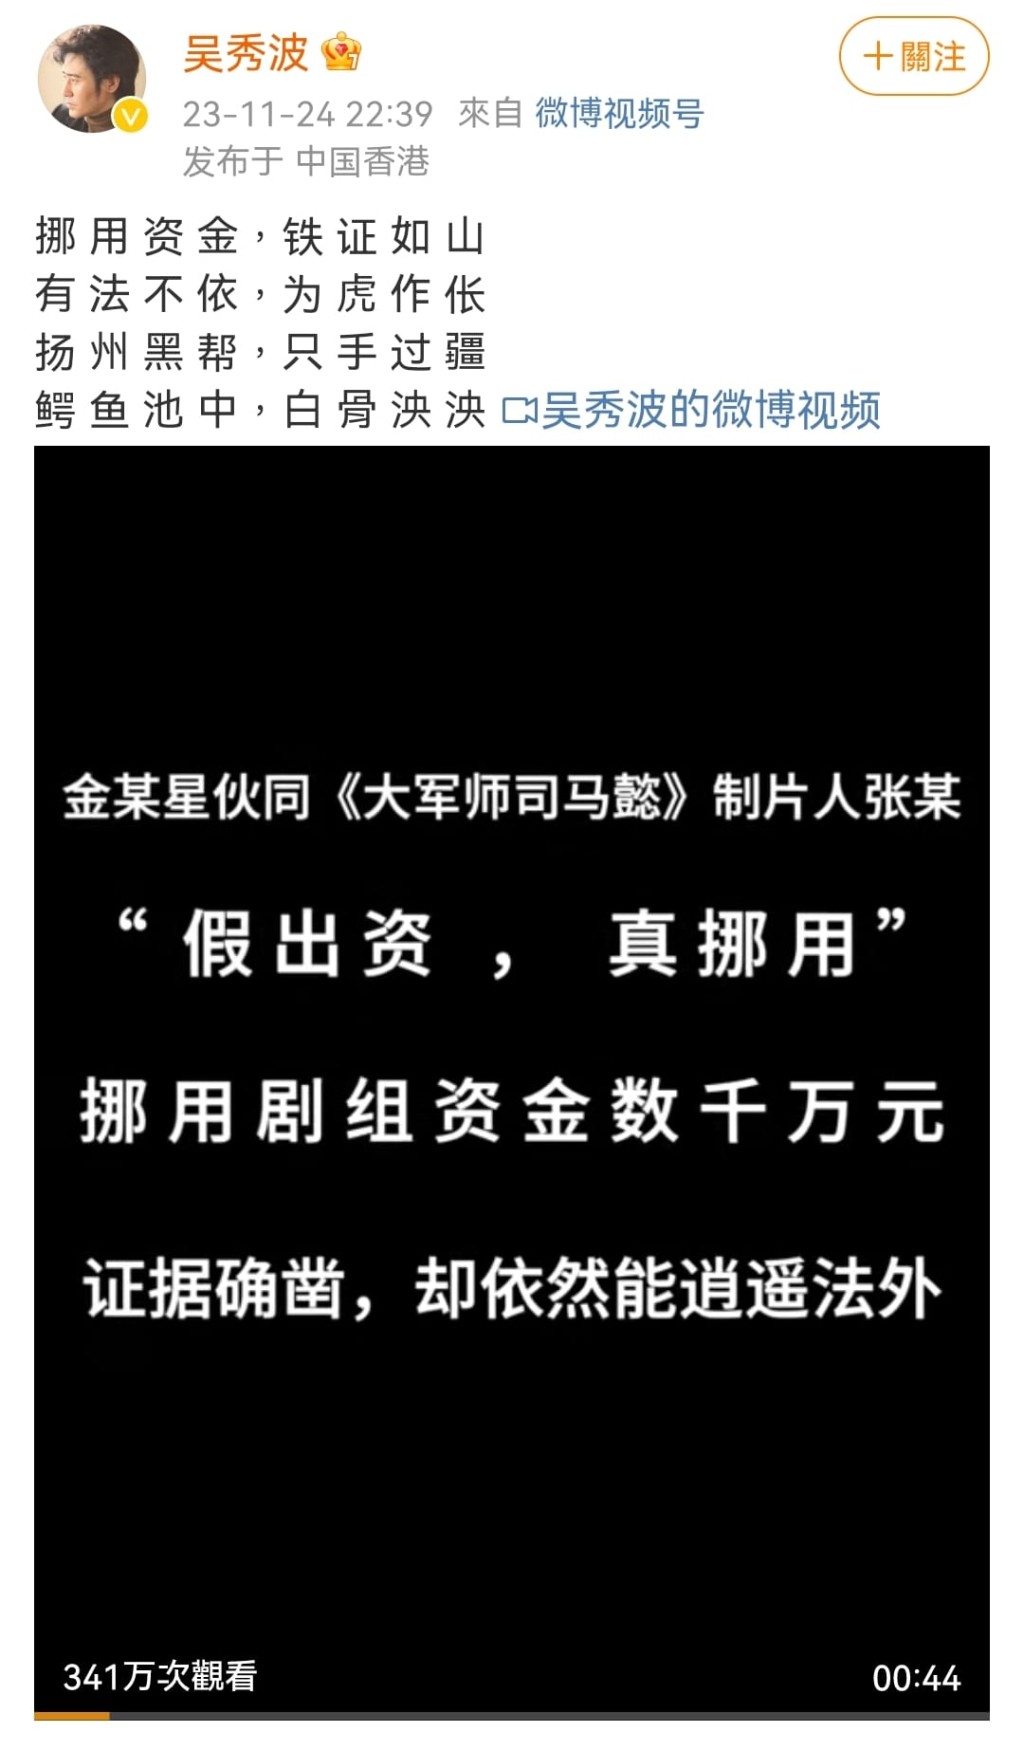 當晚IP地址在香港的吳秀波就發文及短片維權，還自創了一首四言詩。